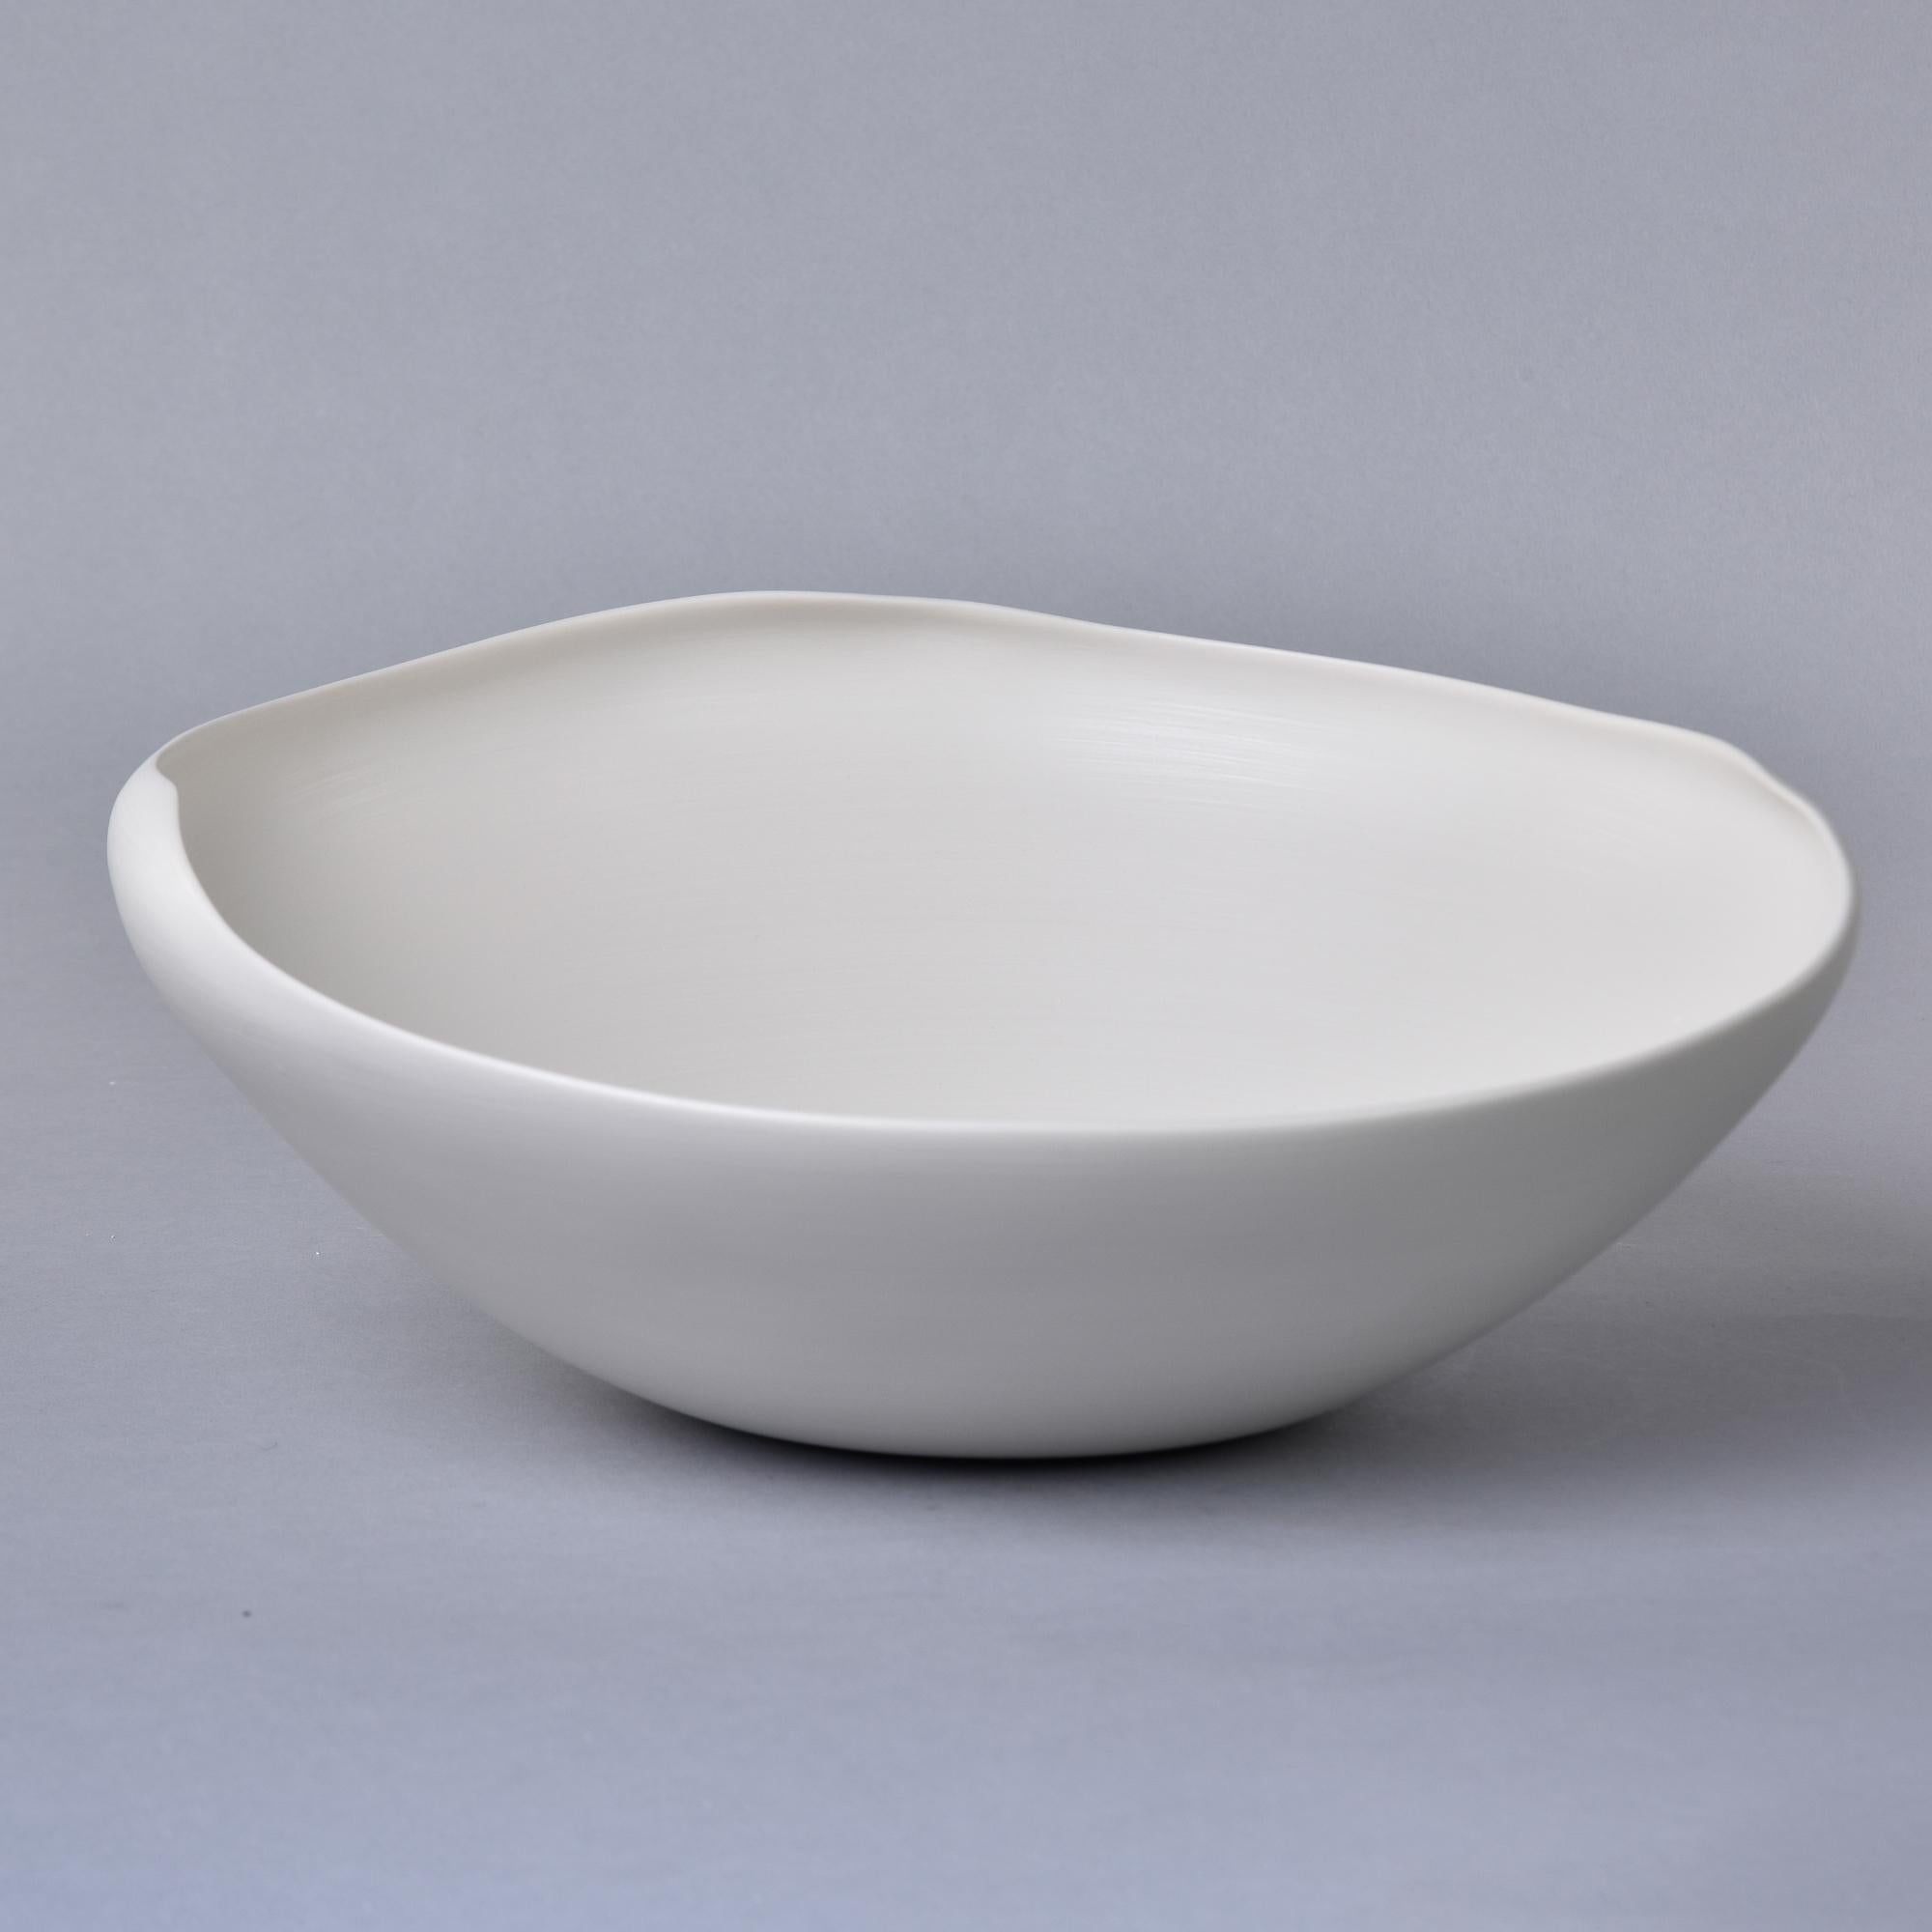 Nouveau et importé d'Italie, ce bol en poterie d'art de Rina Menardi est un bol à paroi mince avec un bord irrégulier et une glaçure blanc os neutre. Le dessous de la base porte la marque du fabricant. Nouveau, sans aucun défaut. D'autres styles,